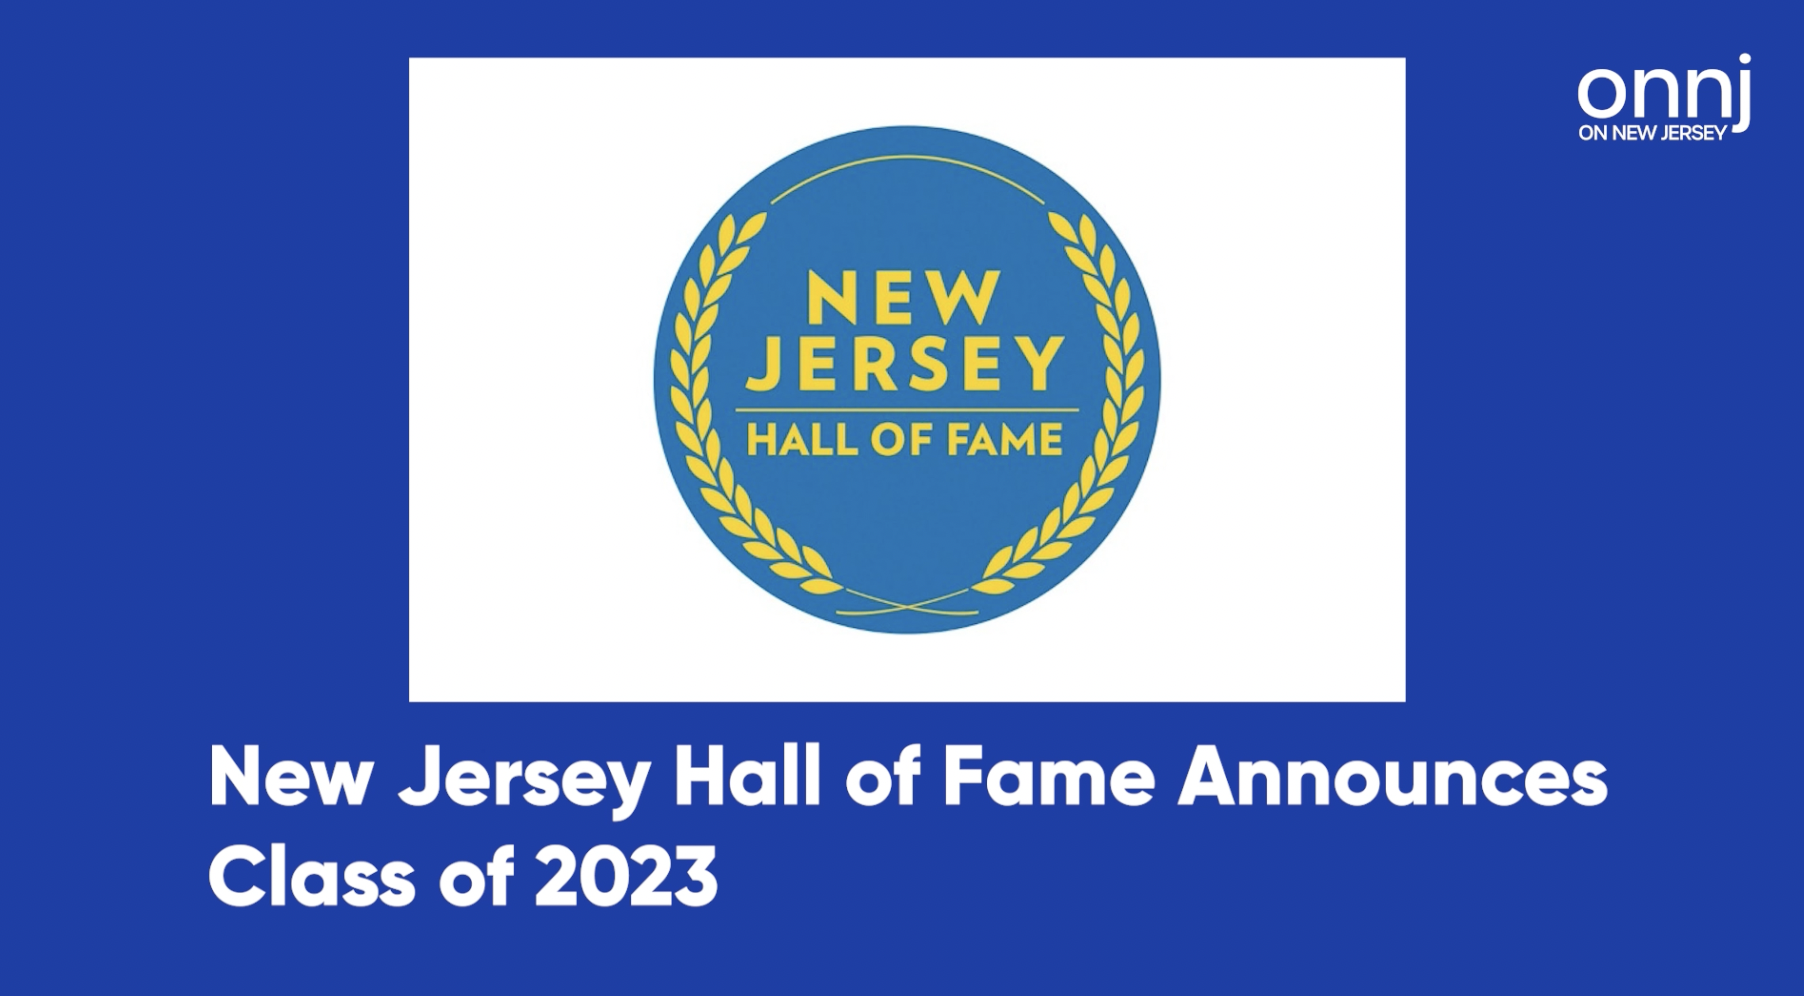 Patti Scialfa, Tiki Barber, and David Chase Among NJ Hall of Fame Inductees for 2023